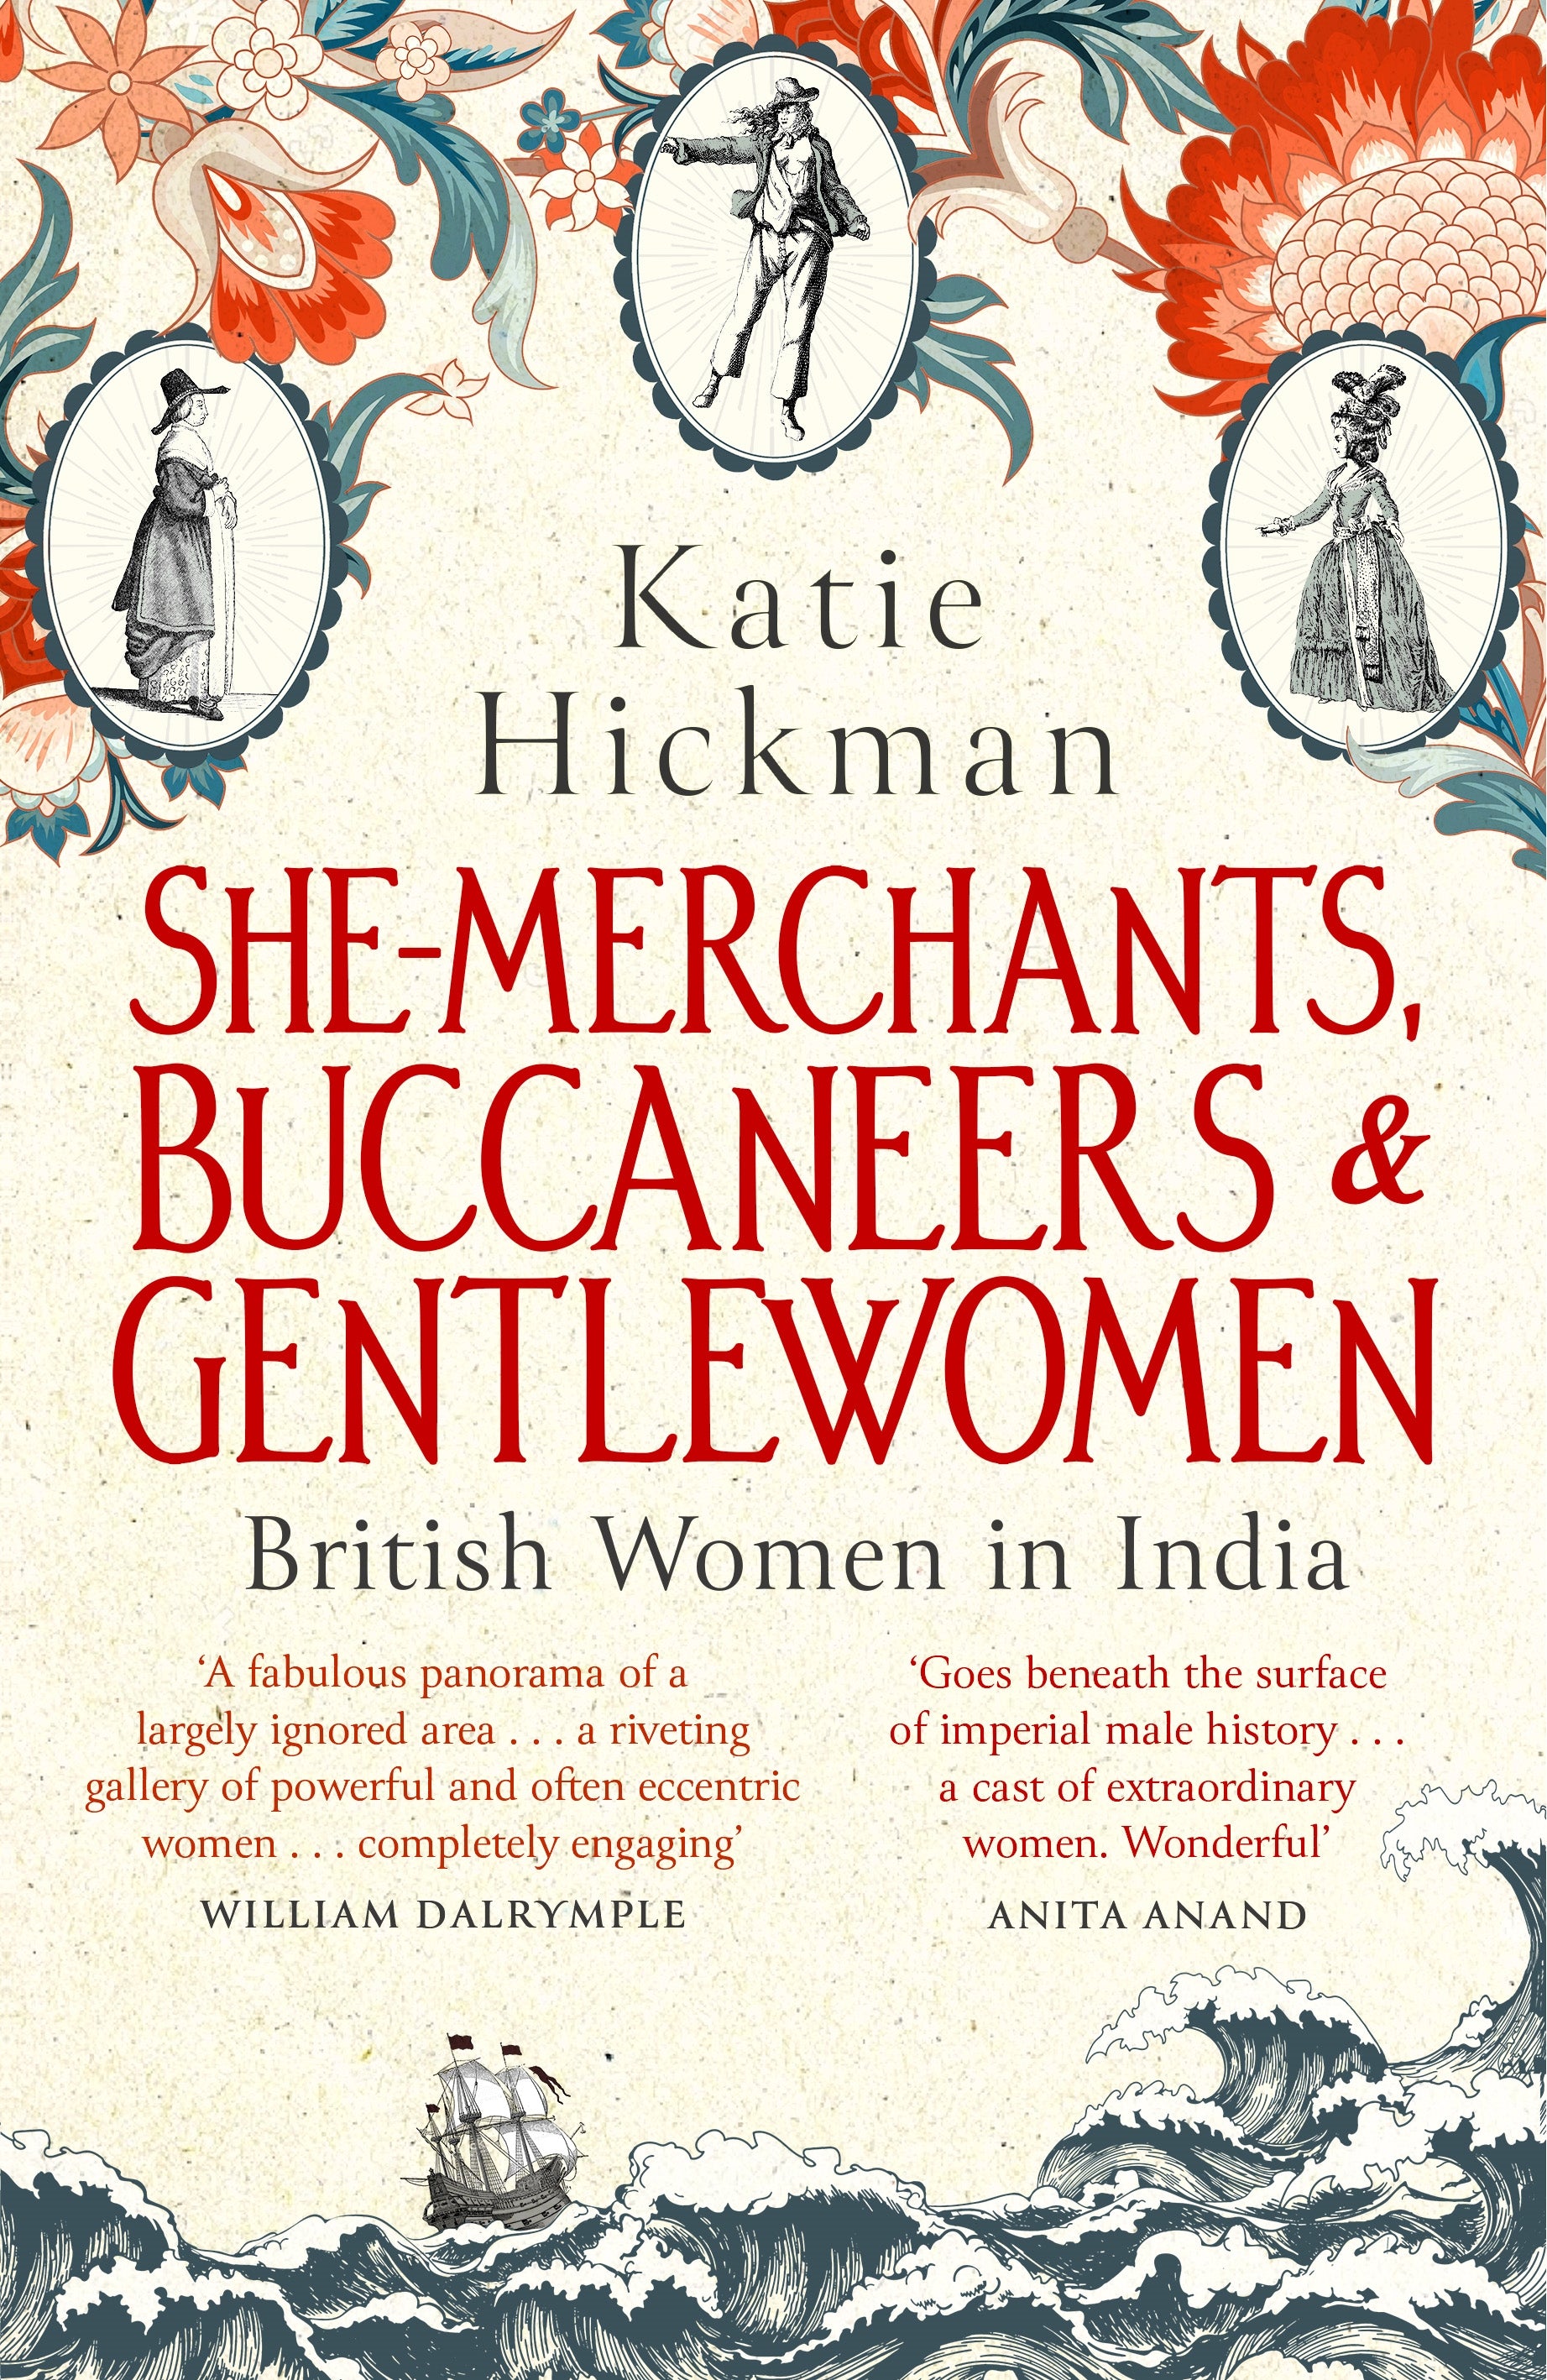 She-Merchants, Buccaneers and Gentlewomen by Katie Hickman